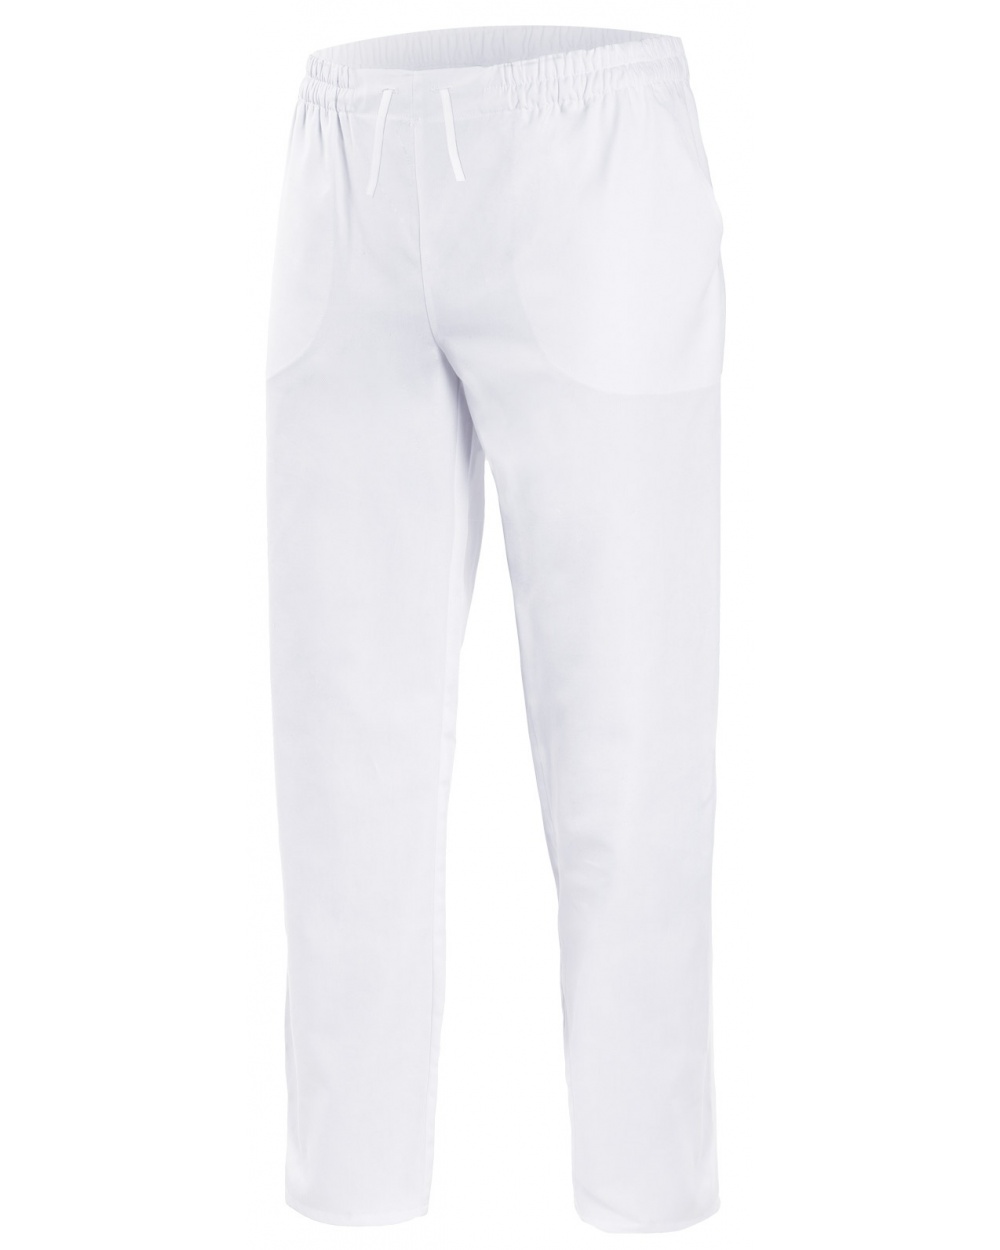 compra pantalon de pijama sanitario blanco de algodon Velilla serie 533005